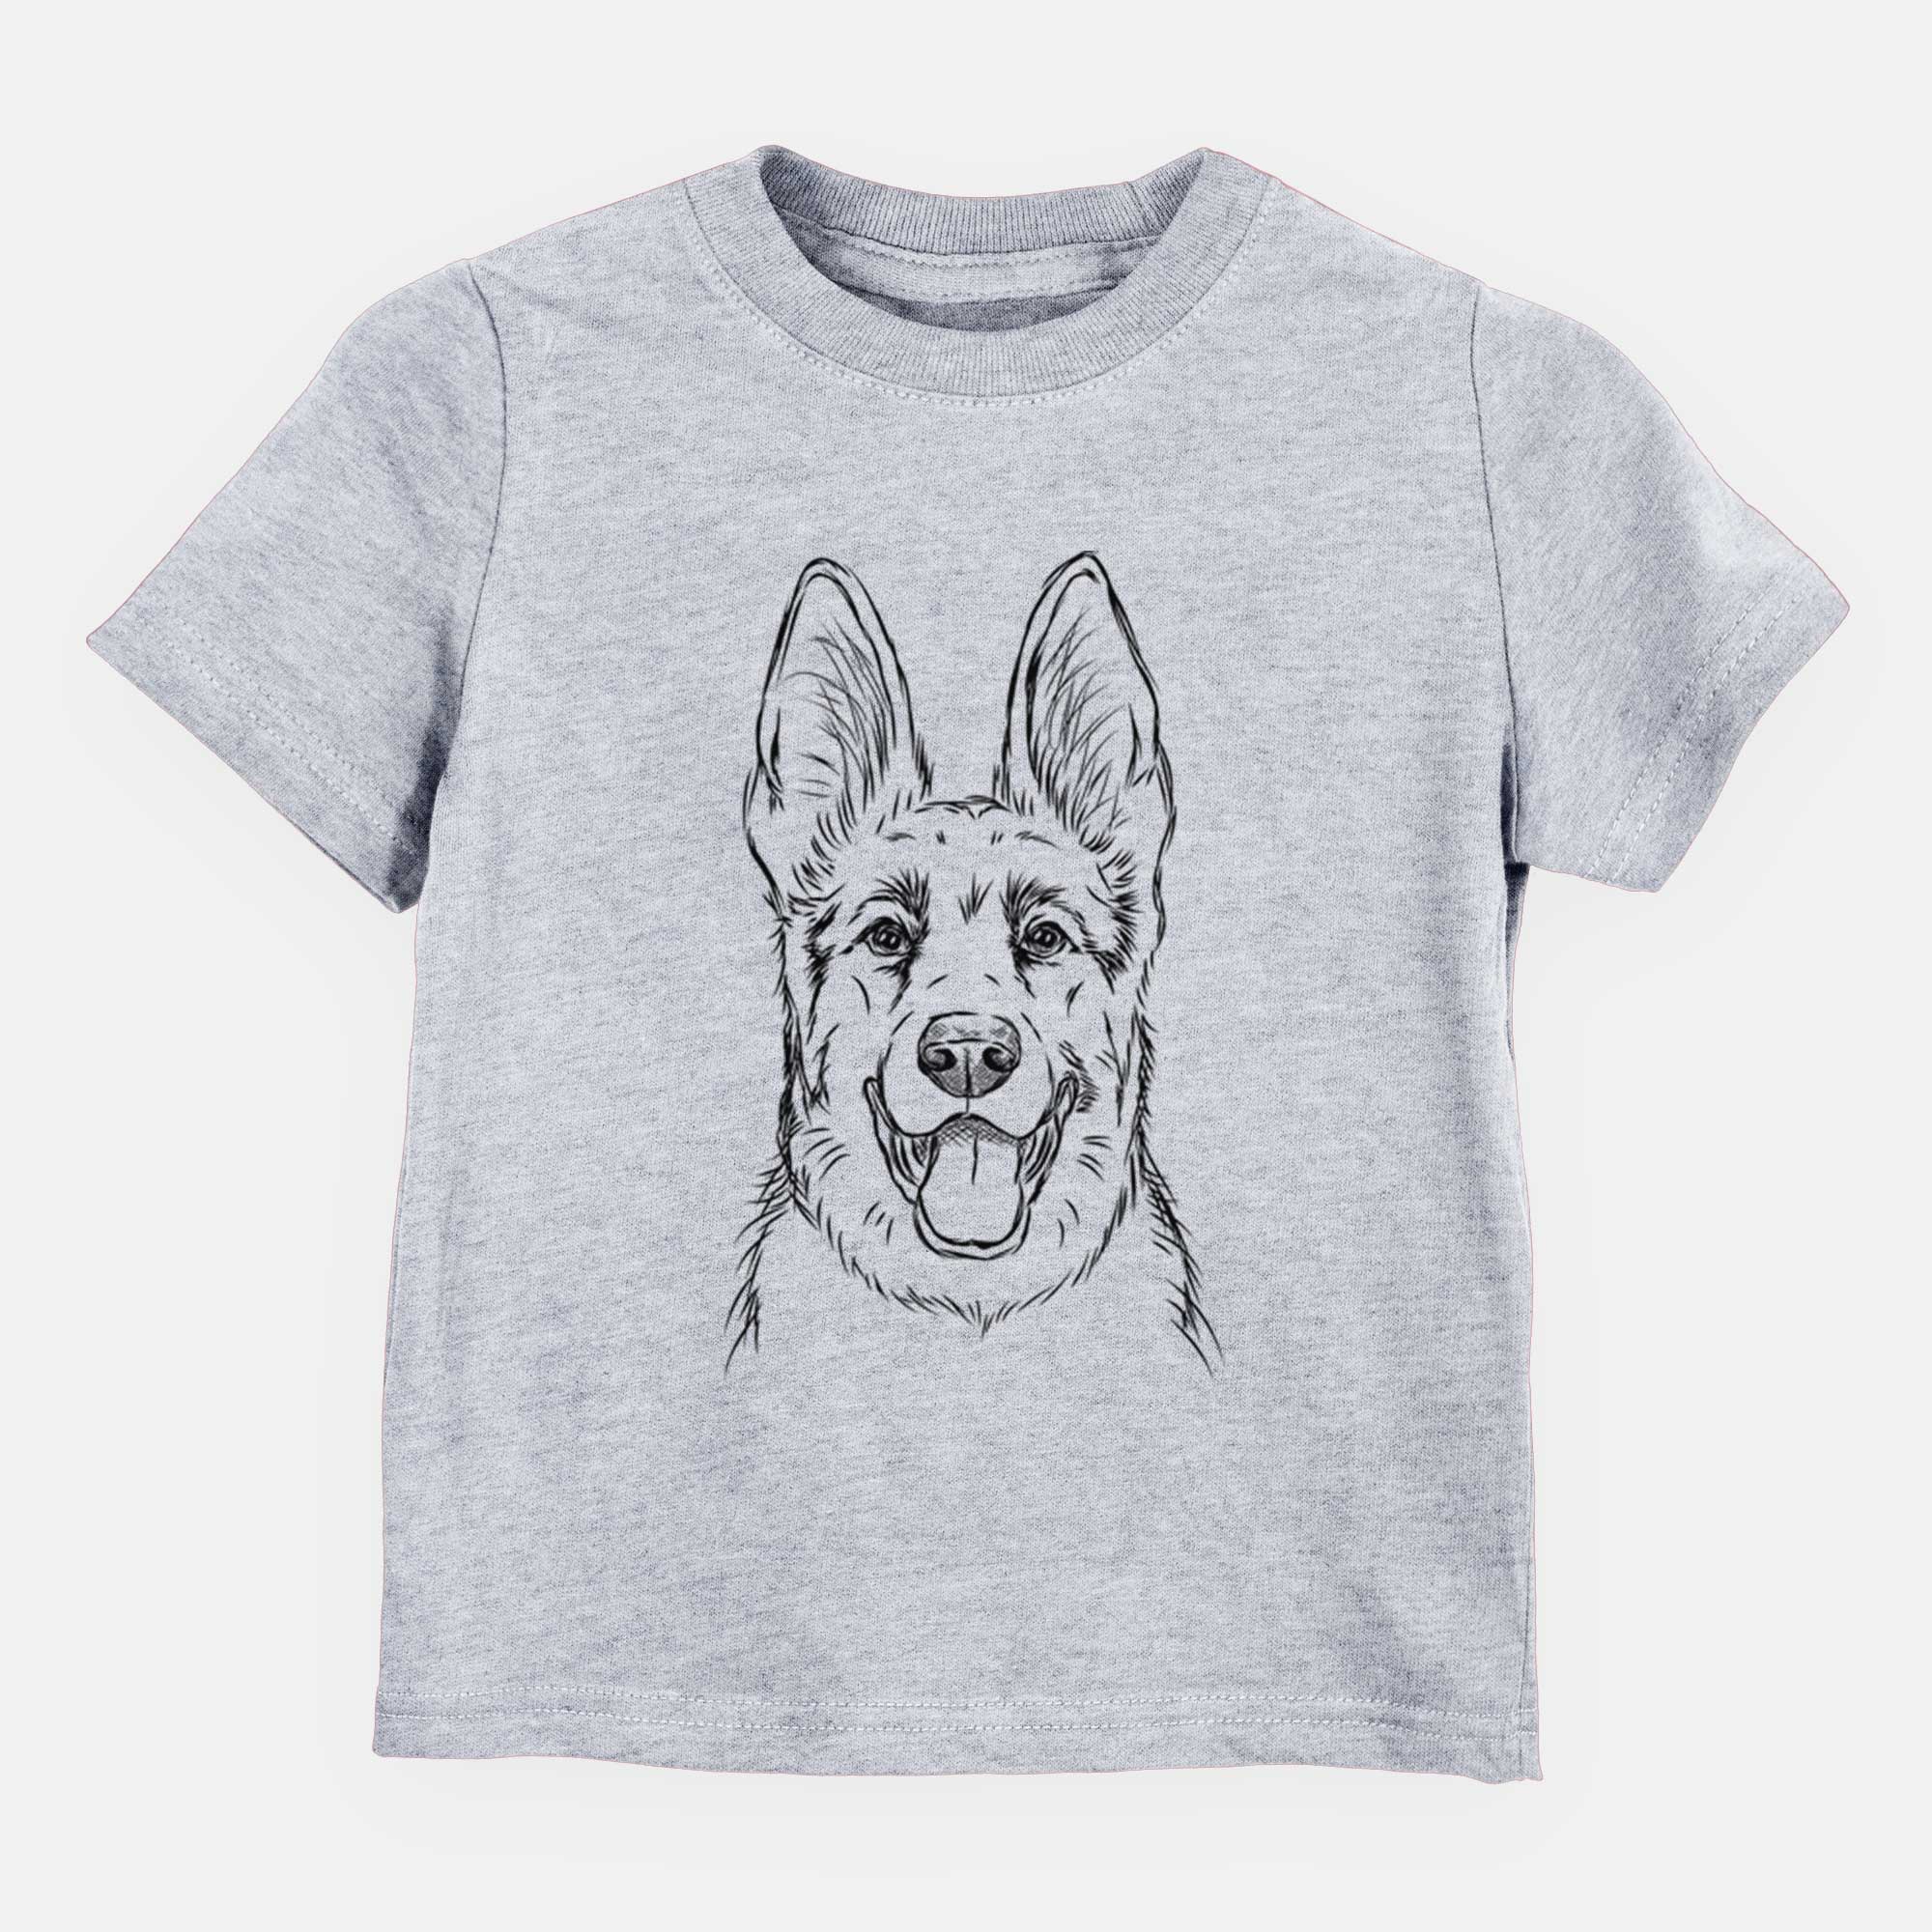 Bare Brutus the German Shepherd - Kids/Youth/Toddler Shirt